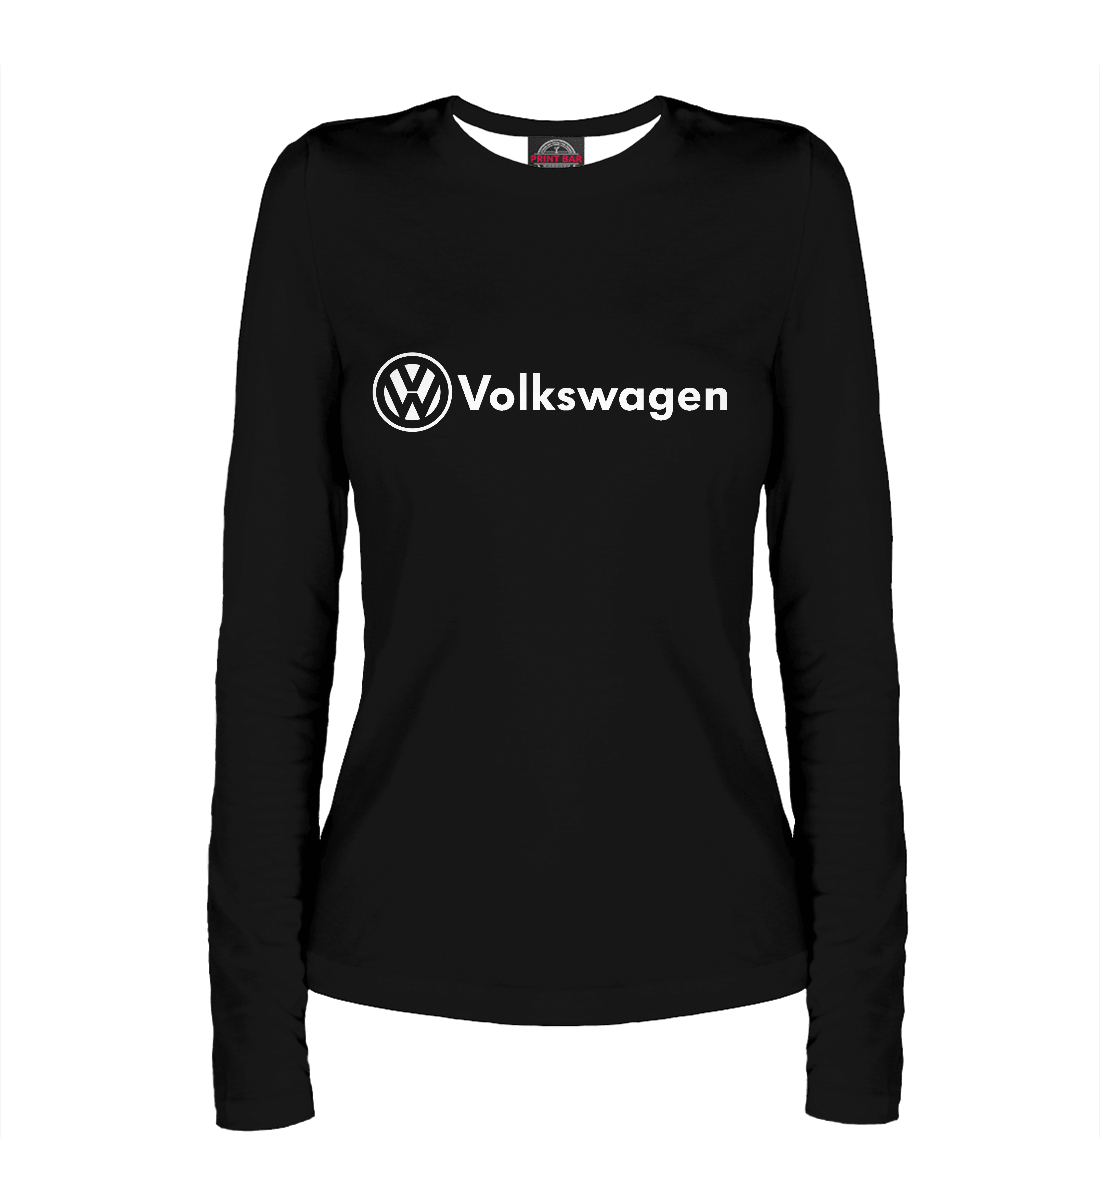 

Volkswagen